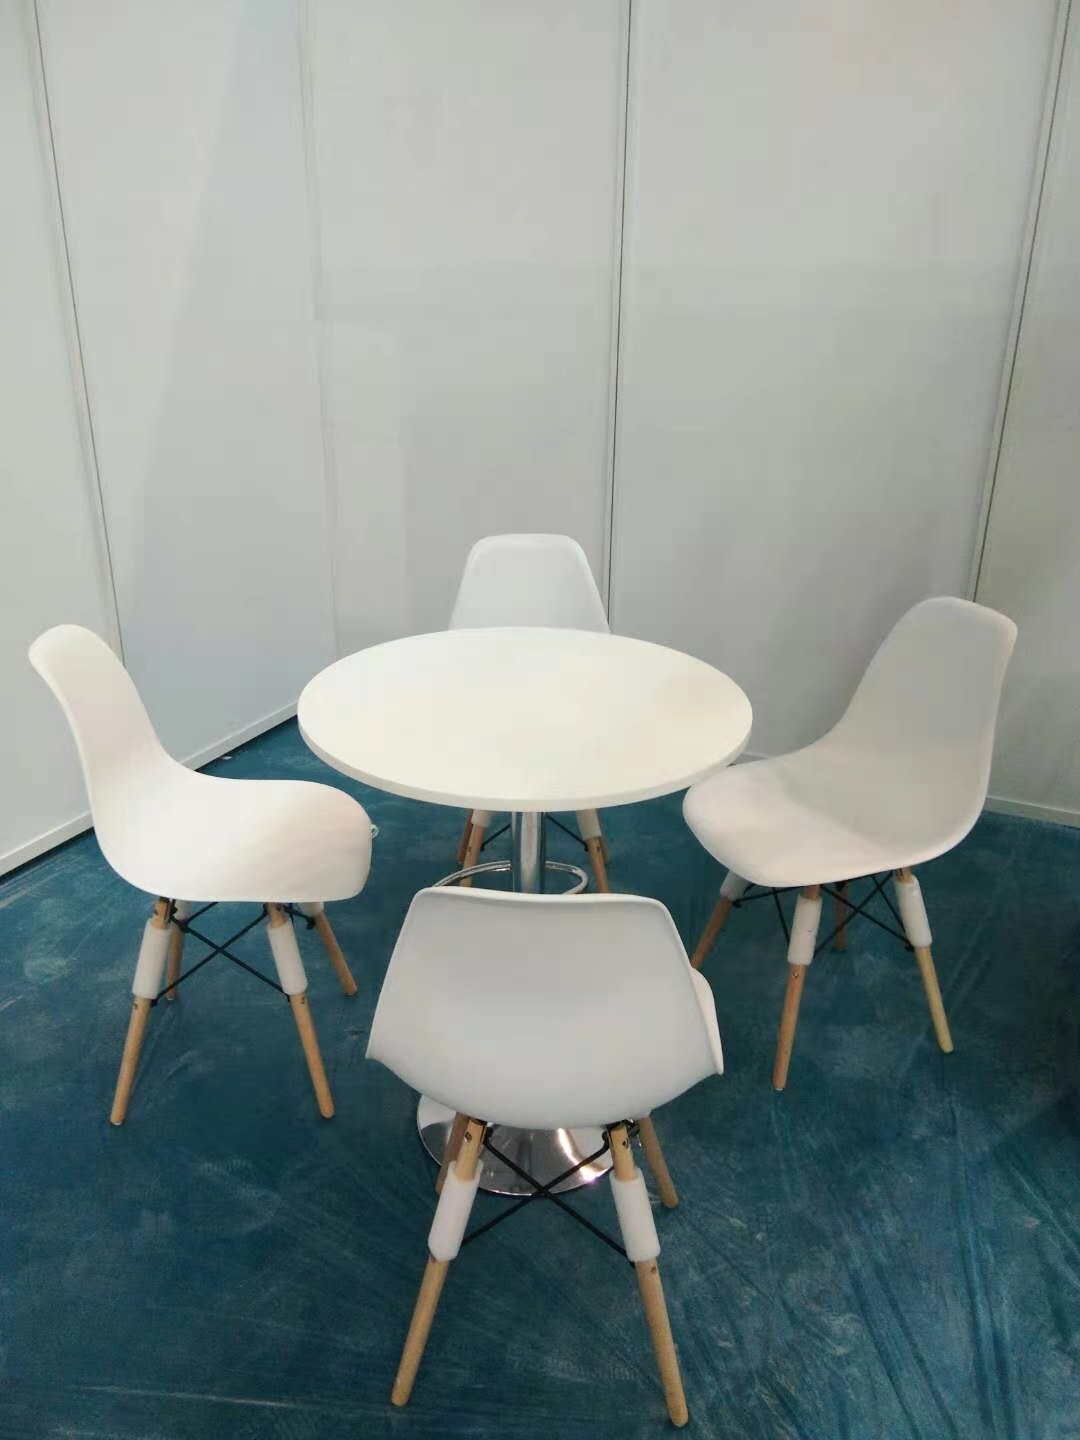 免费设计 东莞活动桌椅定制